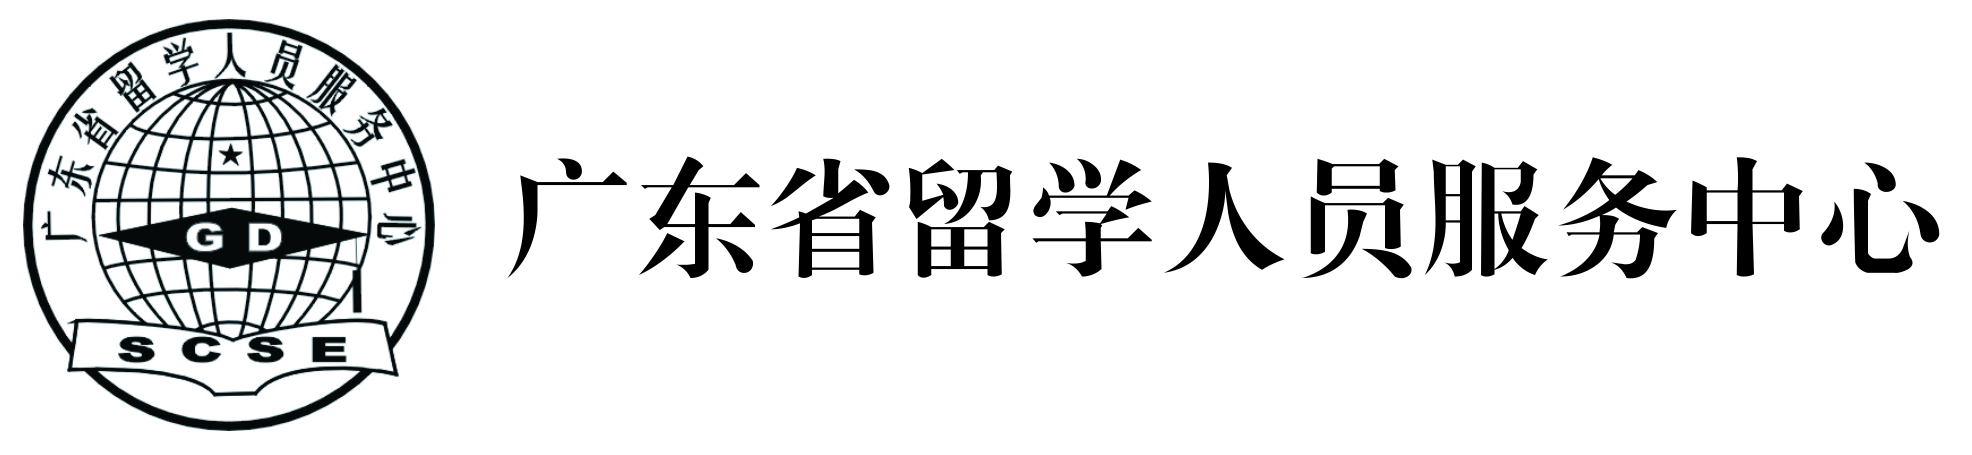 广东省留学人员服务中心logo.jpg